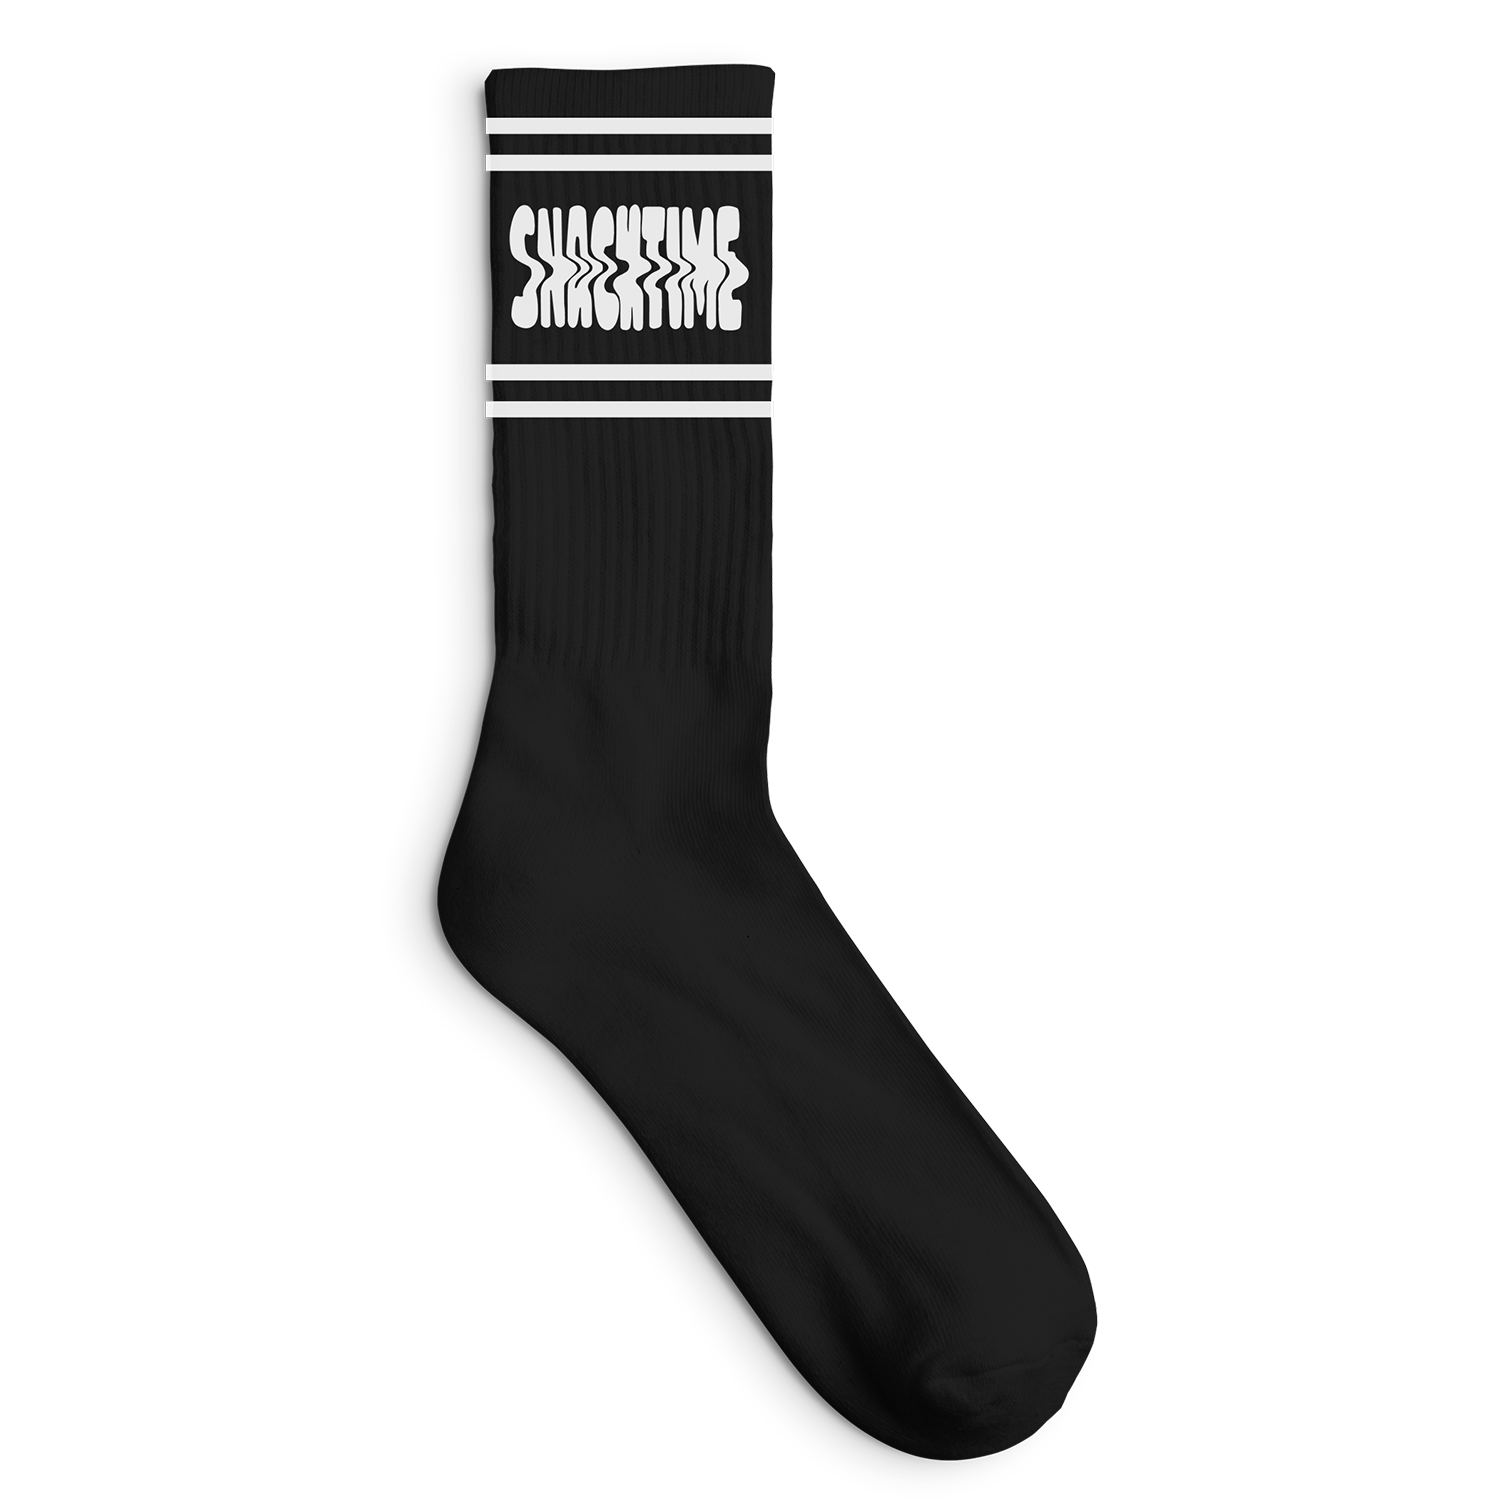 Snacktime | Socks - Black & White